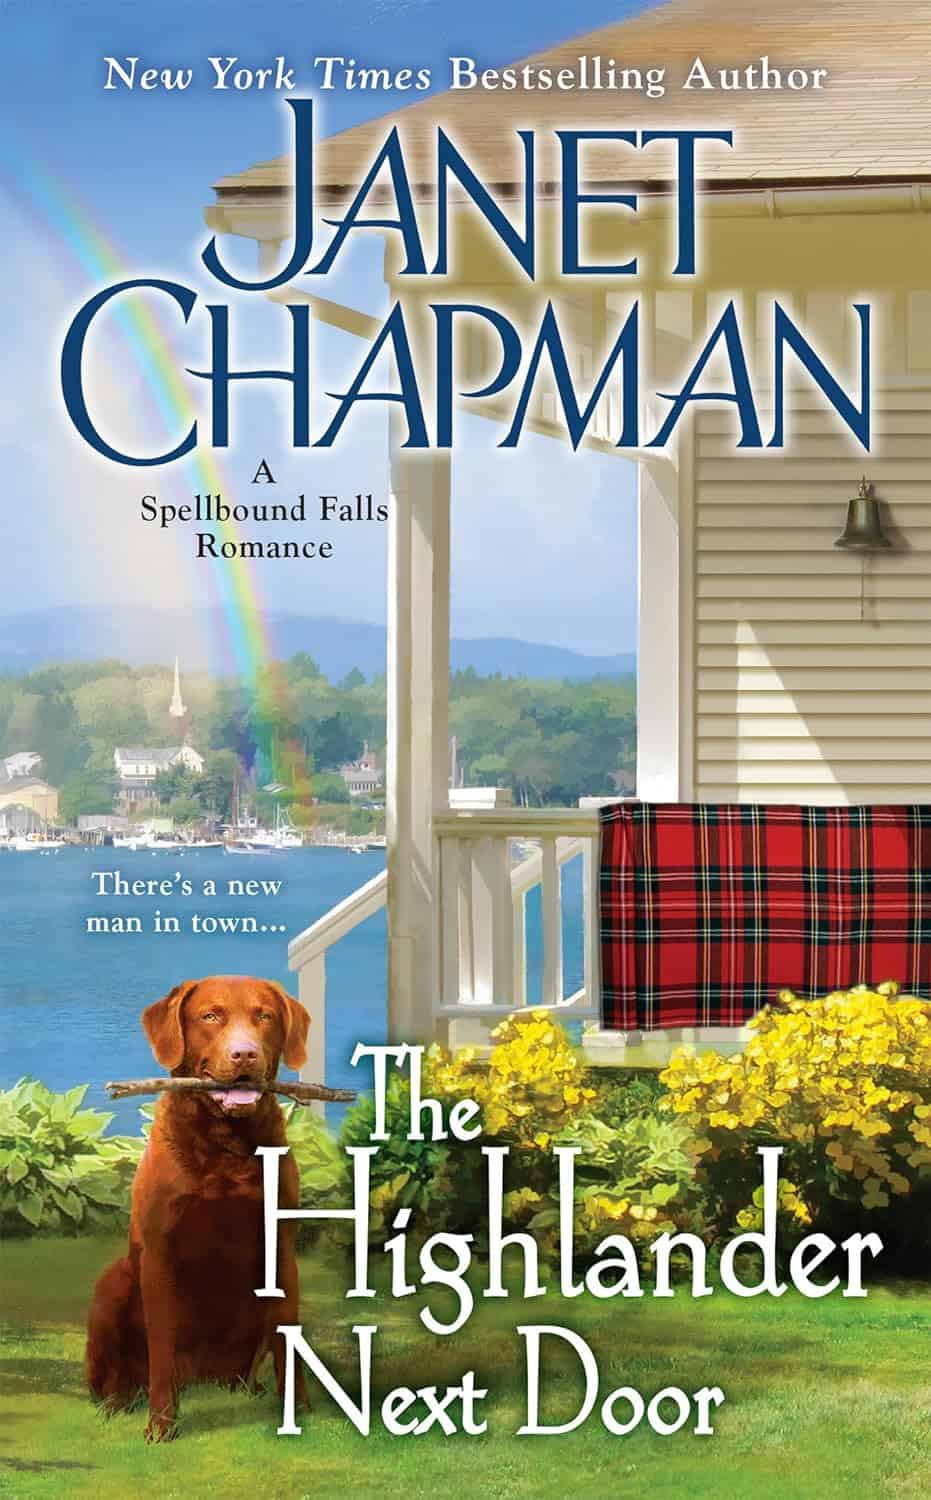 Janet Chapman's The Highlander Next Door